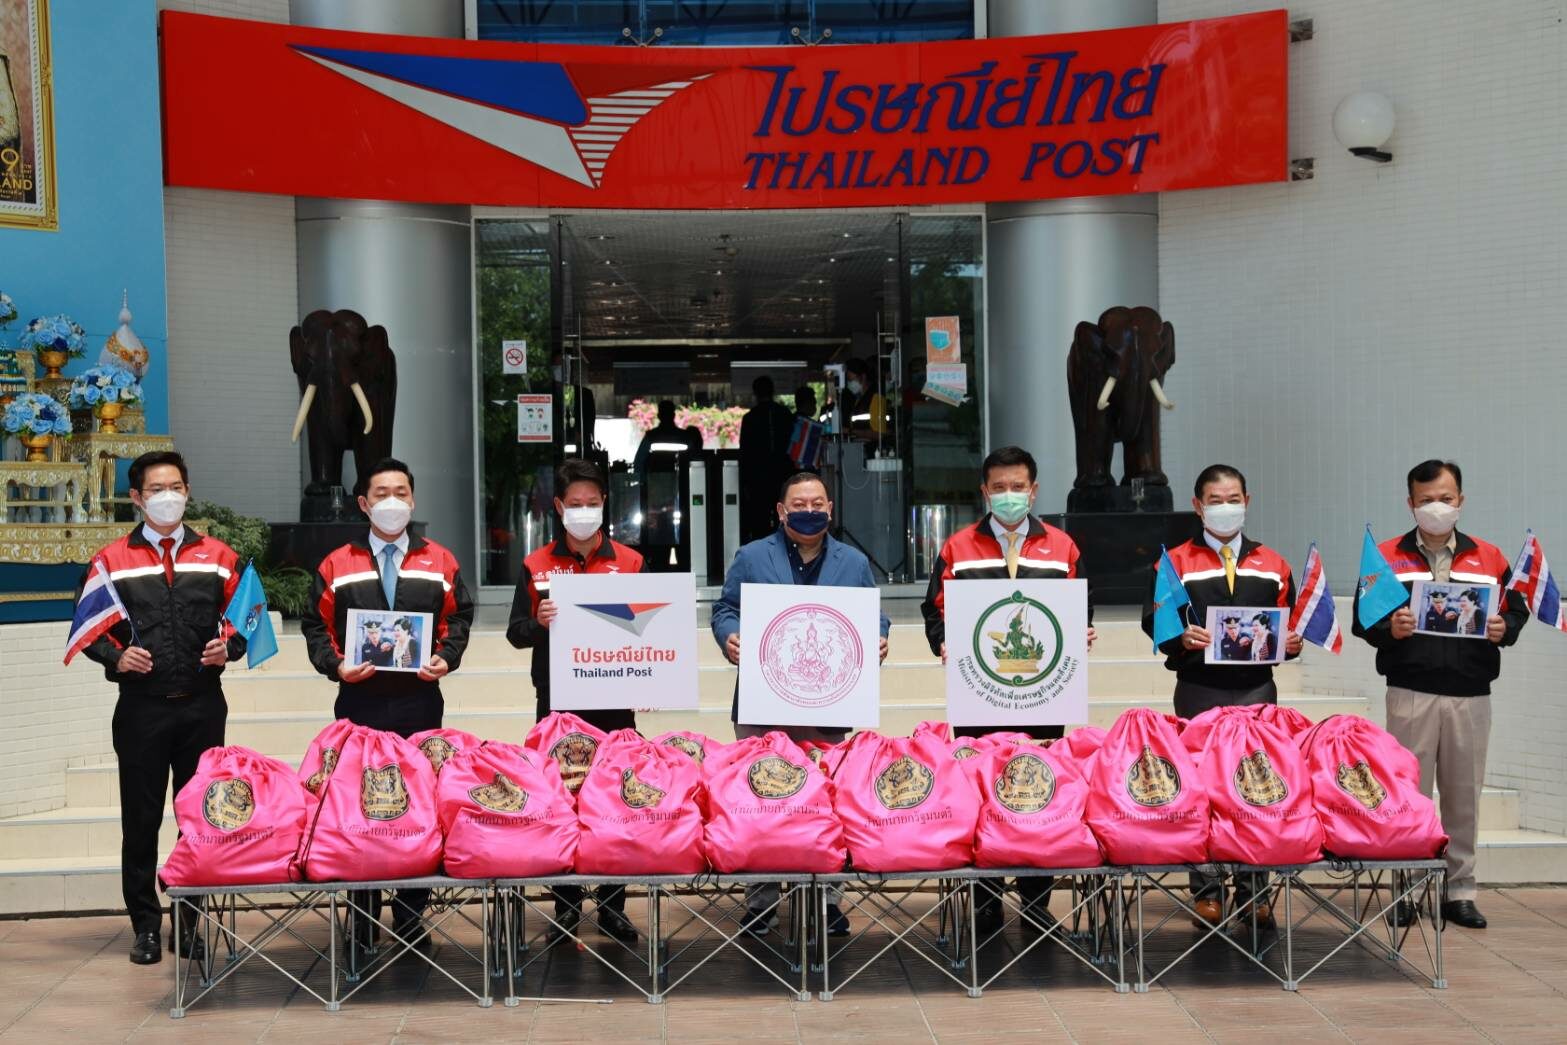 ดีอีเอสมอบไปรษณีย์ไทยหนุน พม. ส่งถุงยังชีพ 3,231 ชุด ช่วยผู้ป่วยติดเตียง-กลุ่มเปราะบางในกทม.